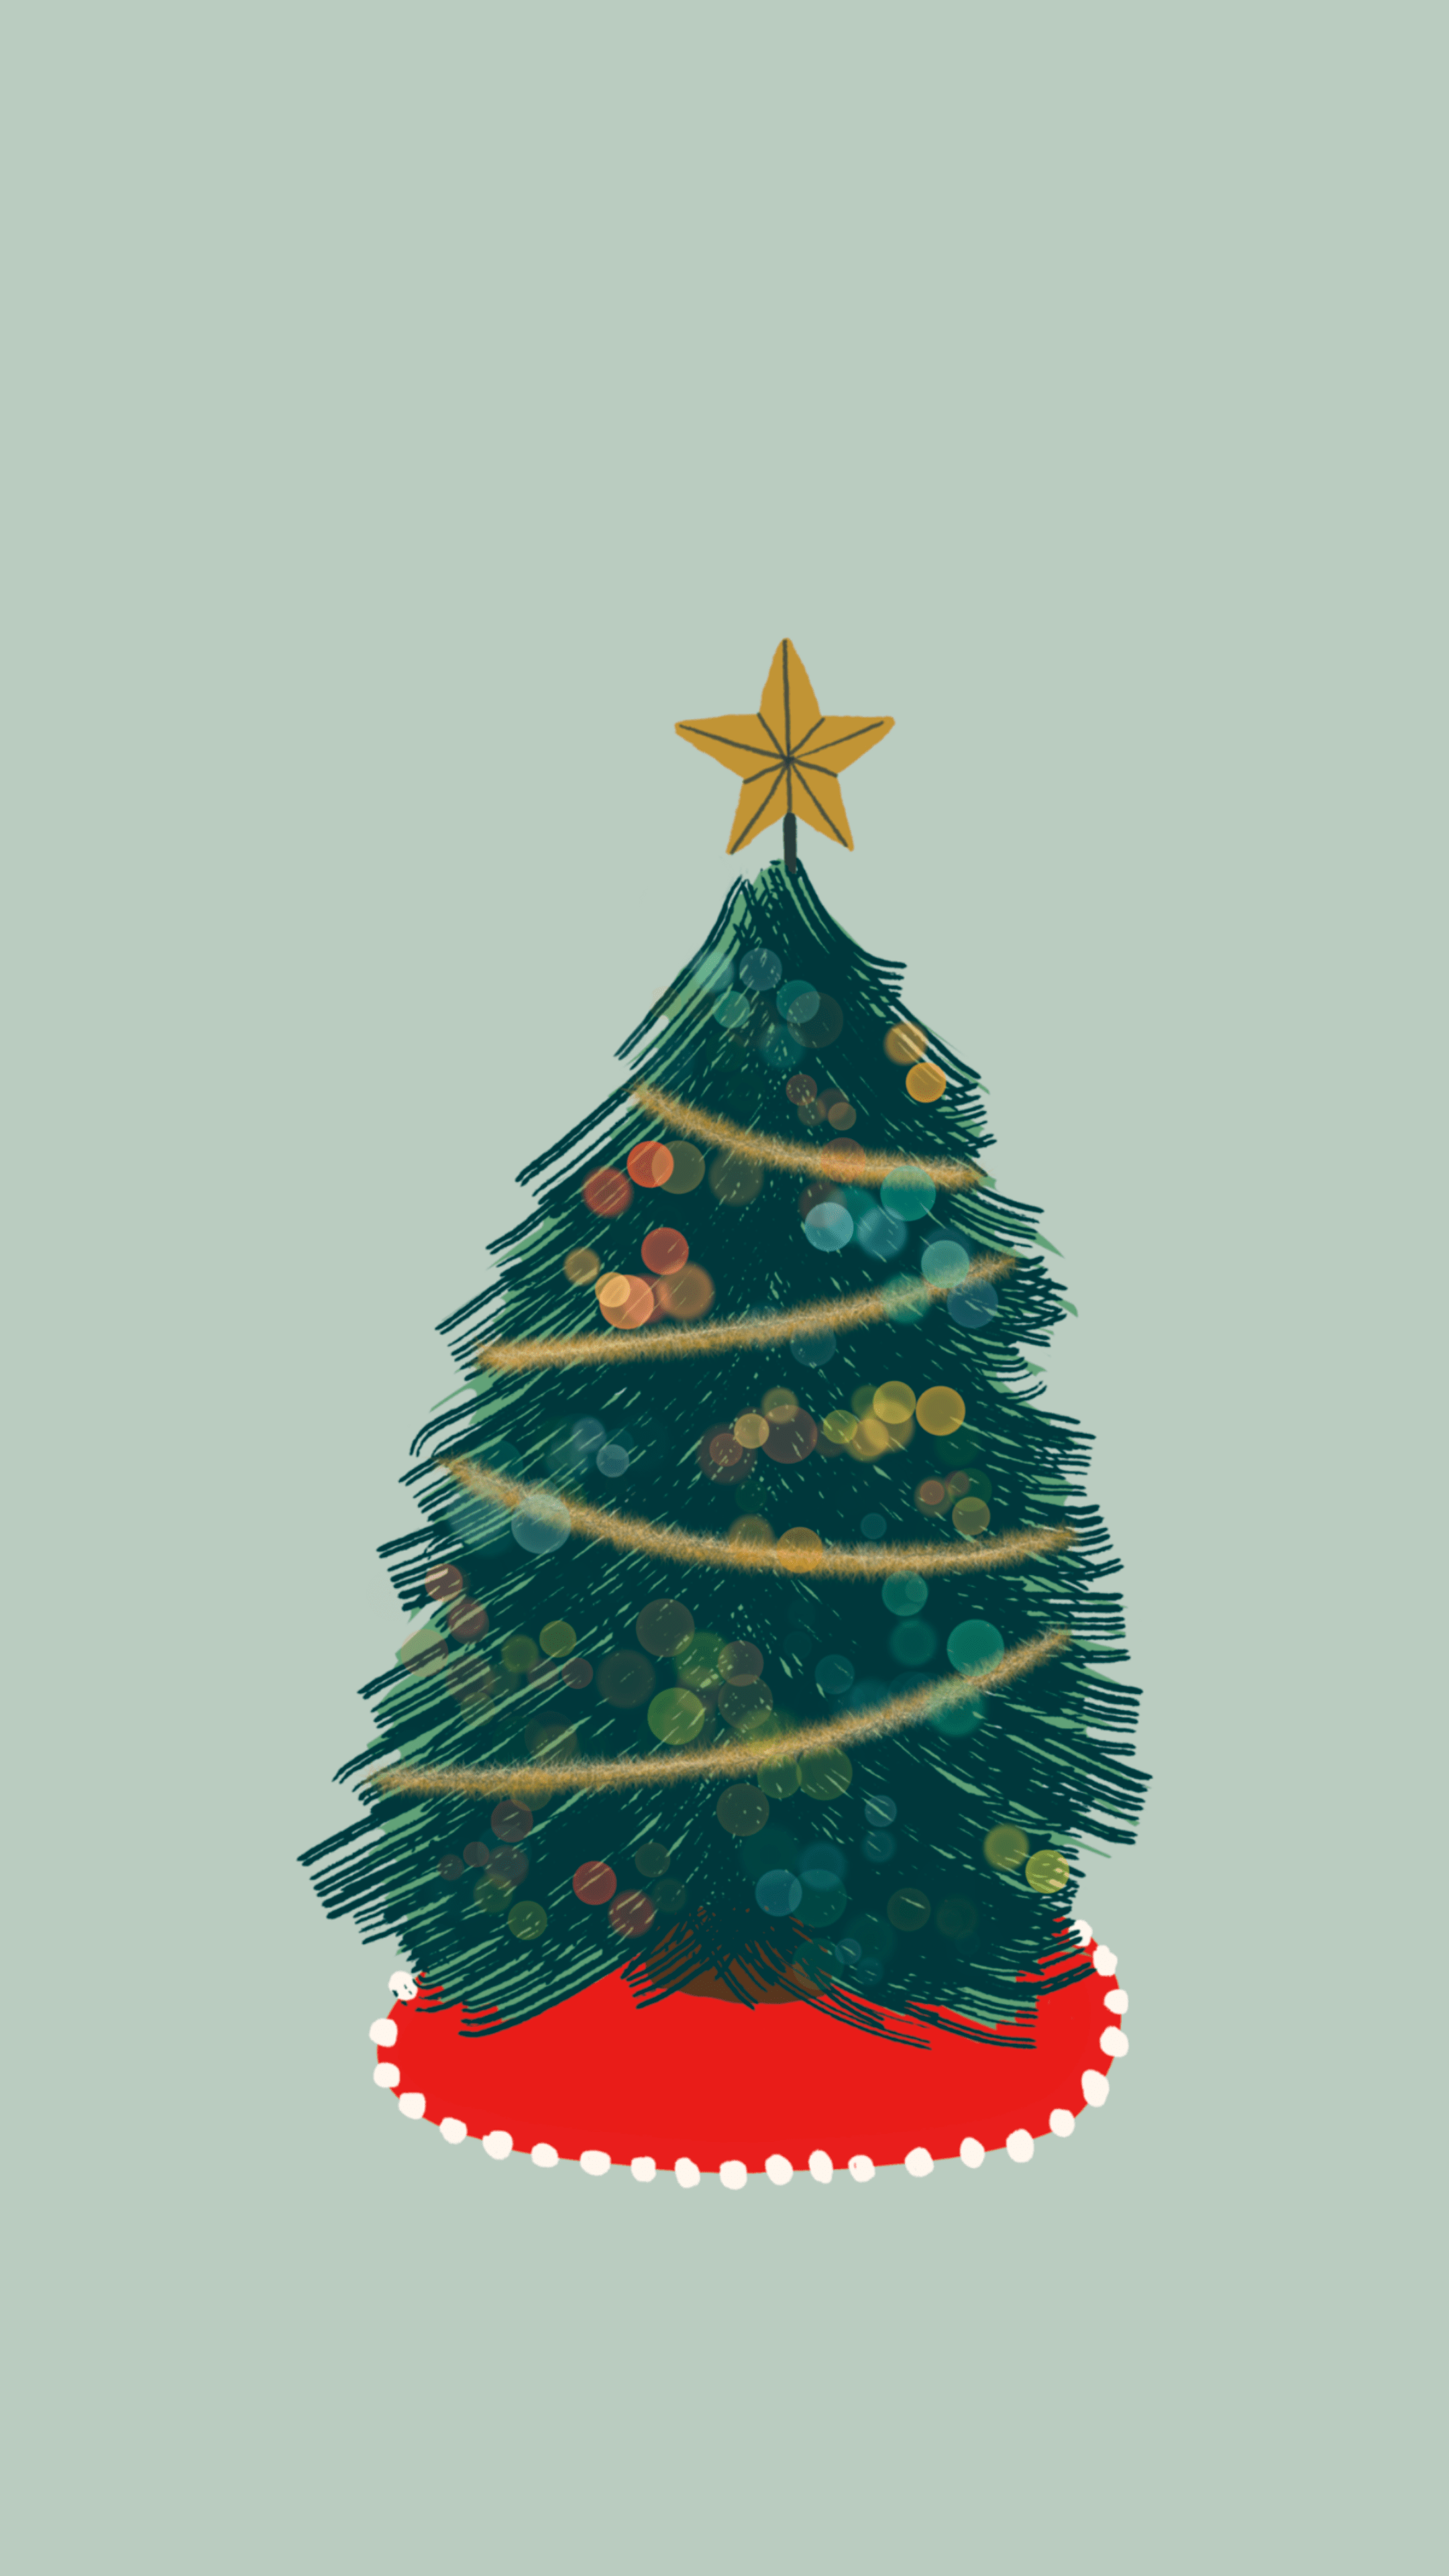 O Christmas Tree Phone Wallpaper Bright Things